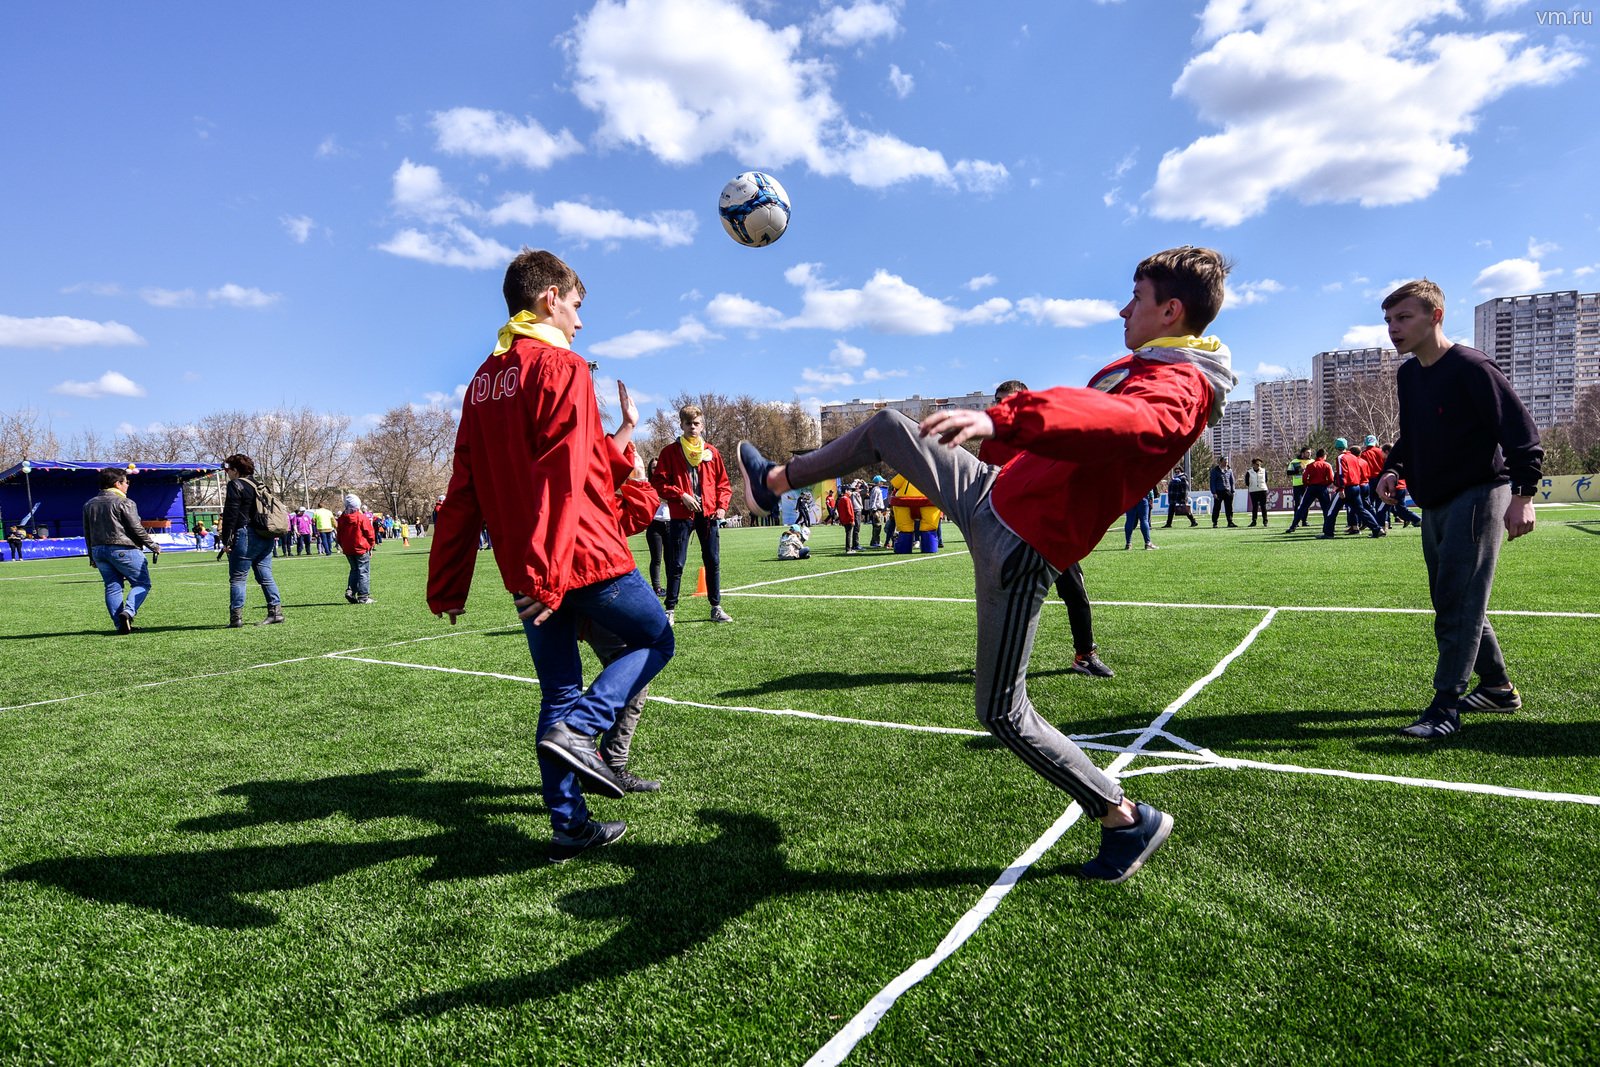 Игра футбольный турнир. Игра футбол. Футбол в парке. Дети играют в футбол. Футбольное поле во дворе.